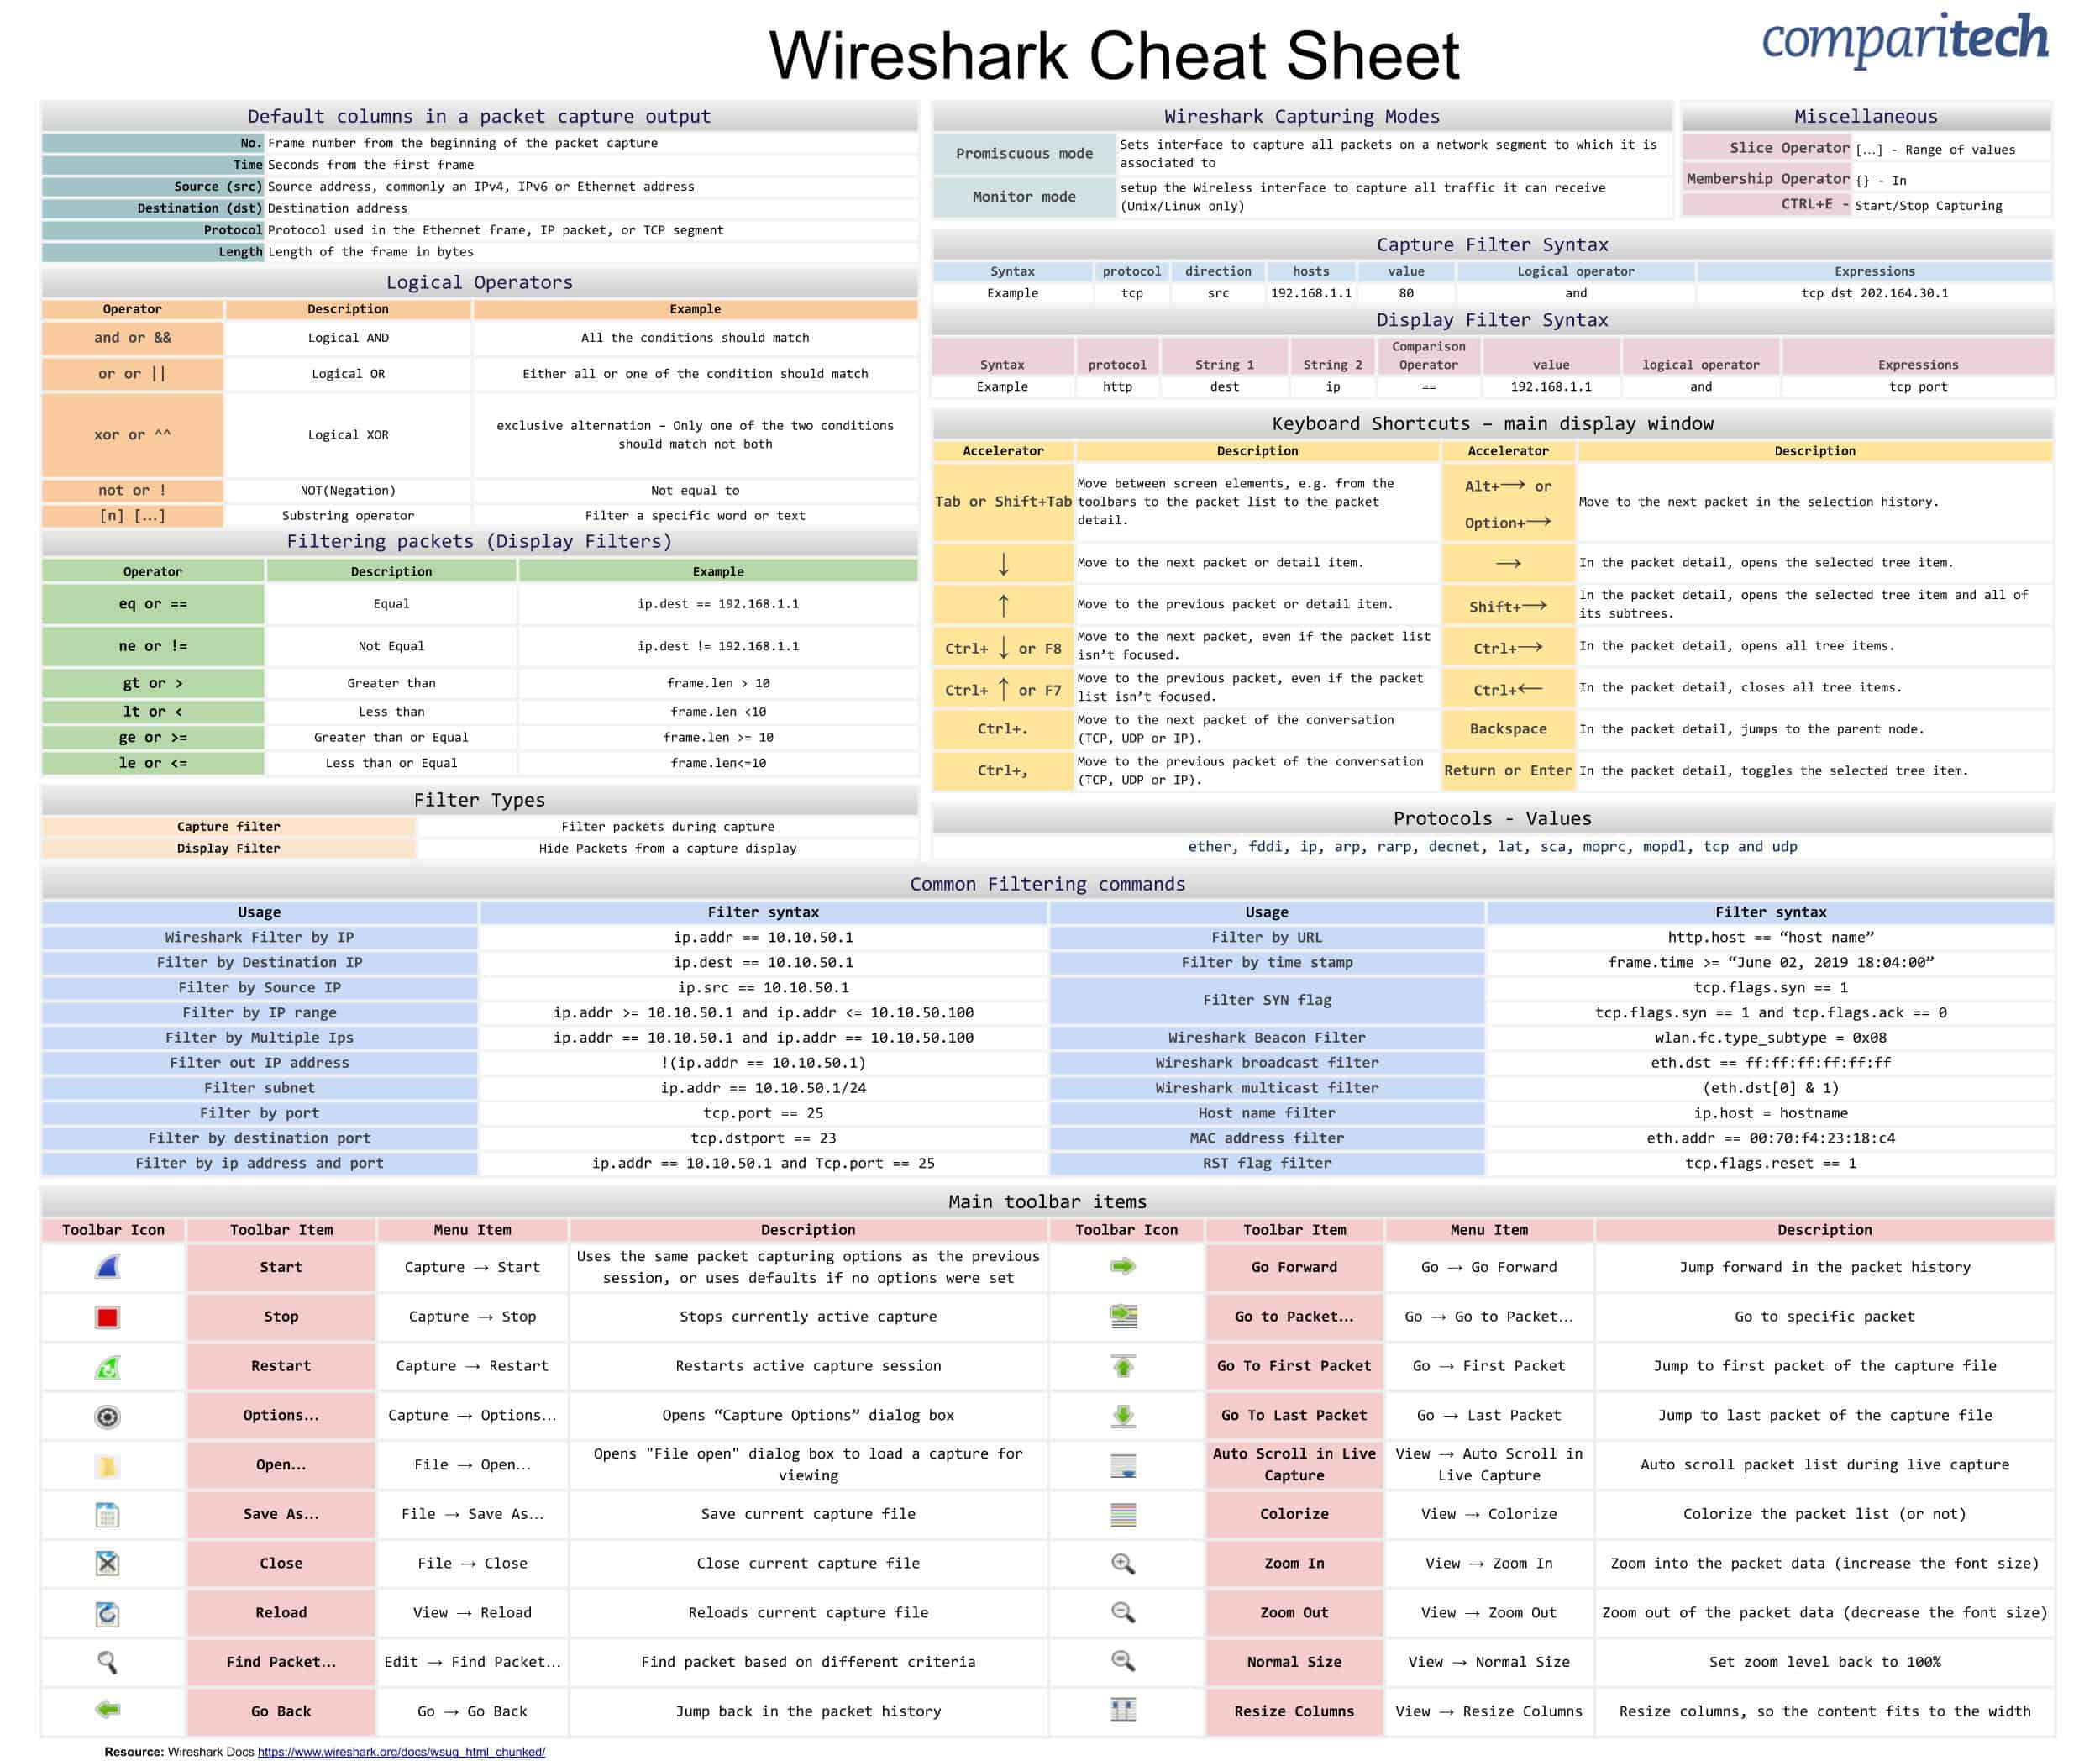 Wireshark Cheat Sheet JPG